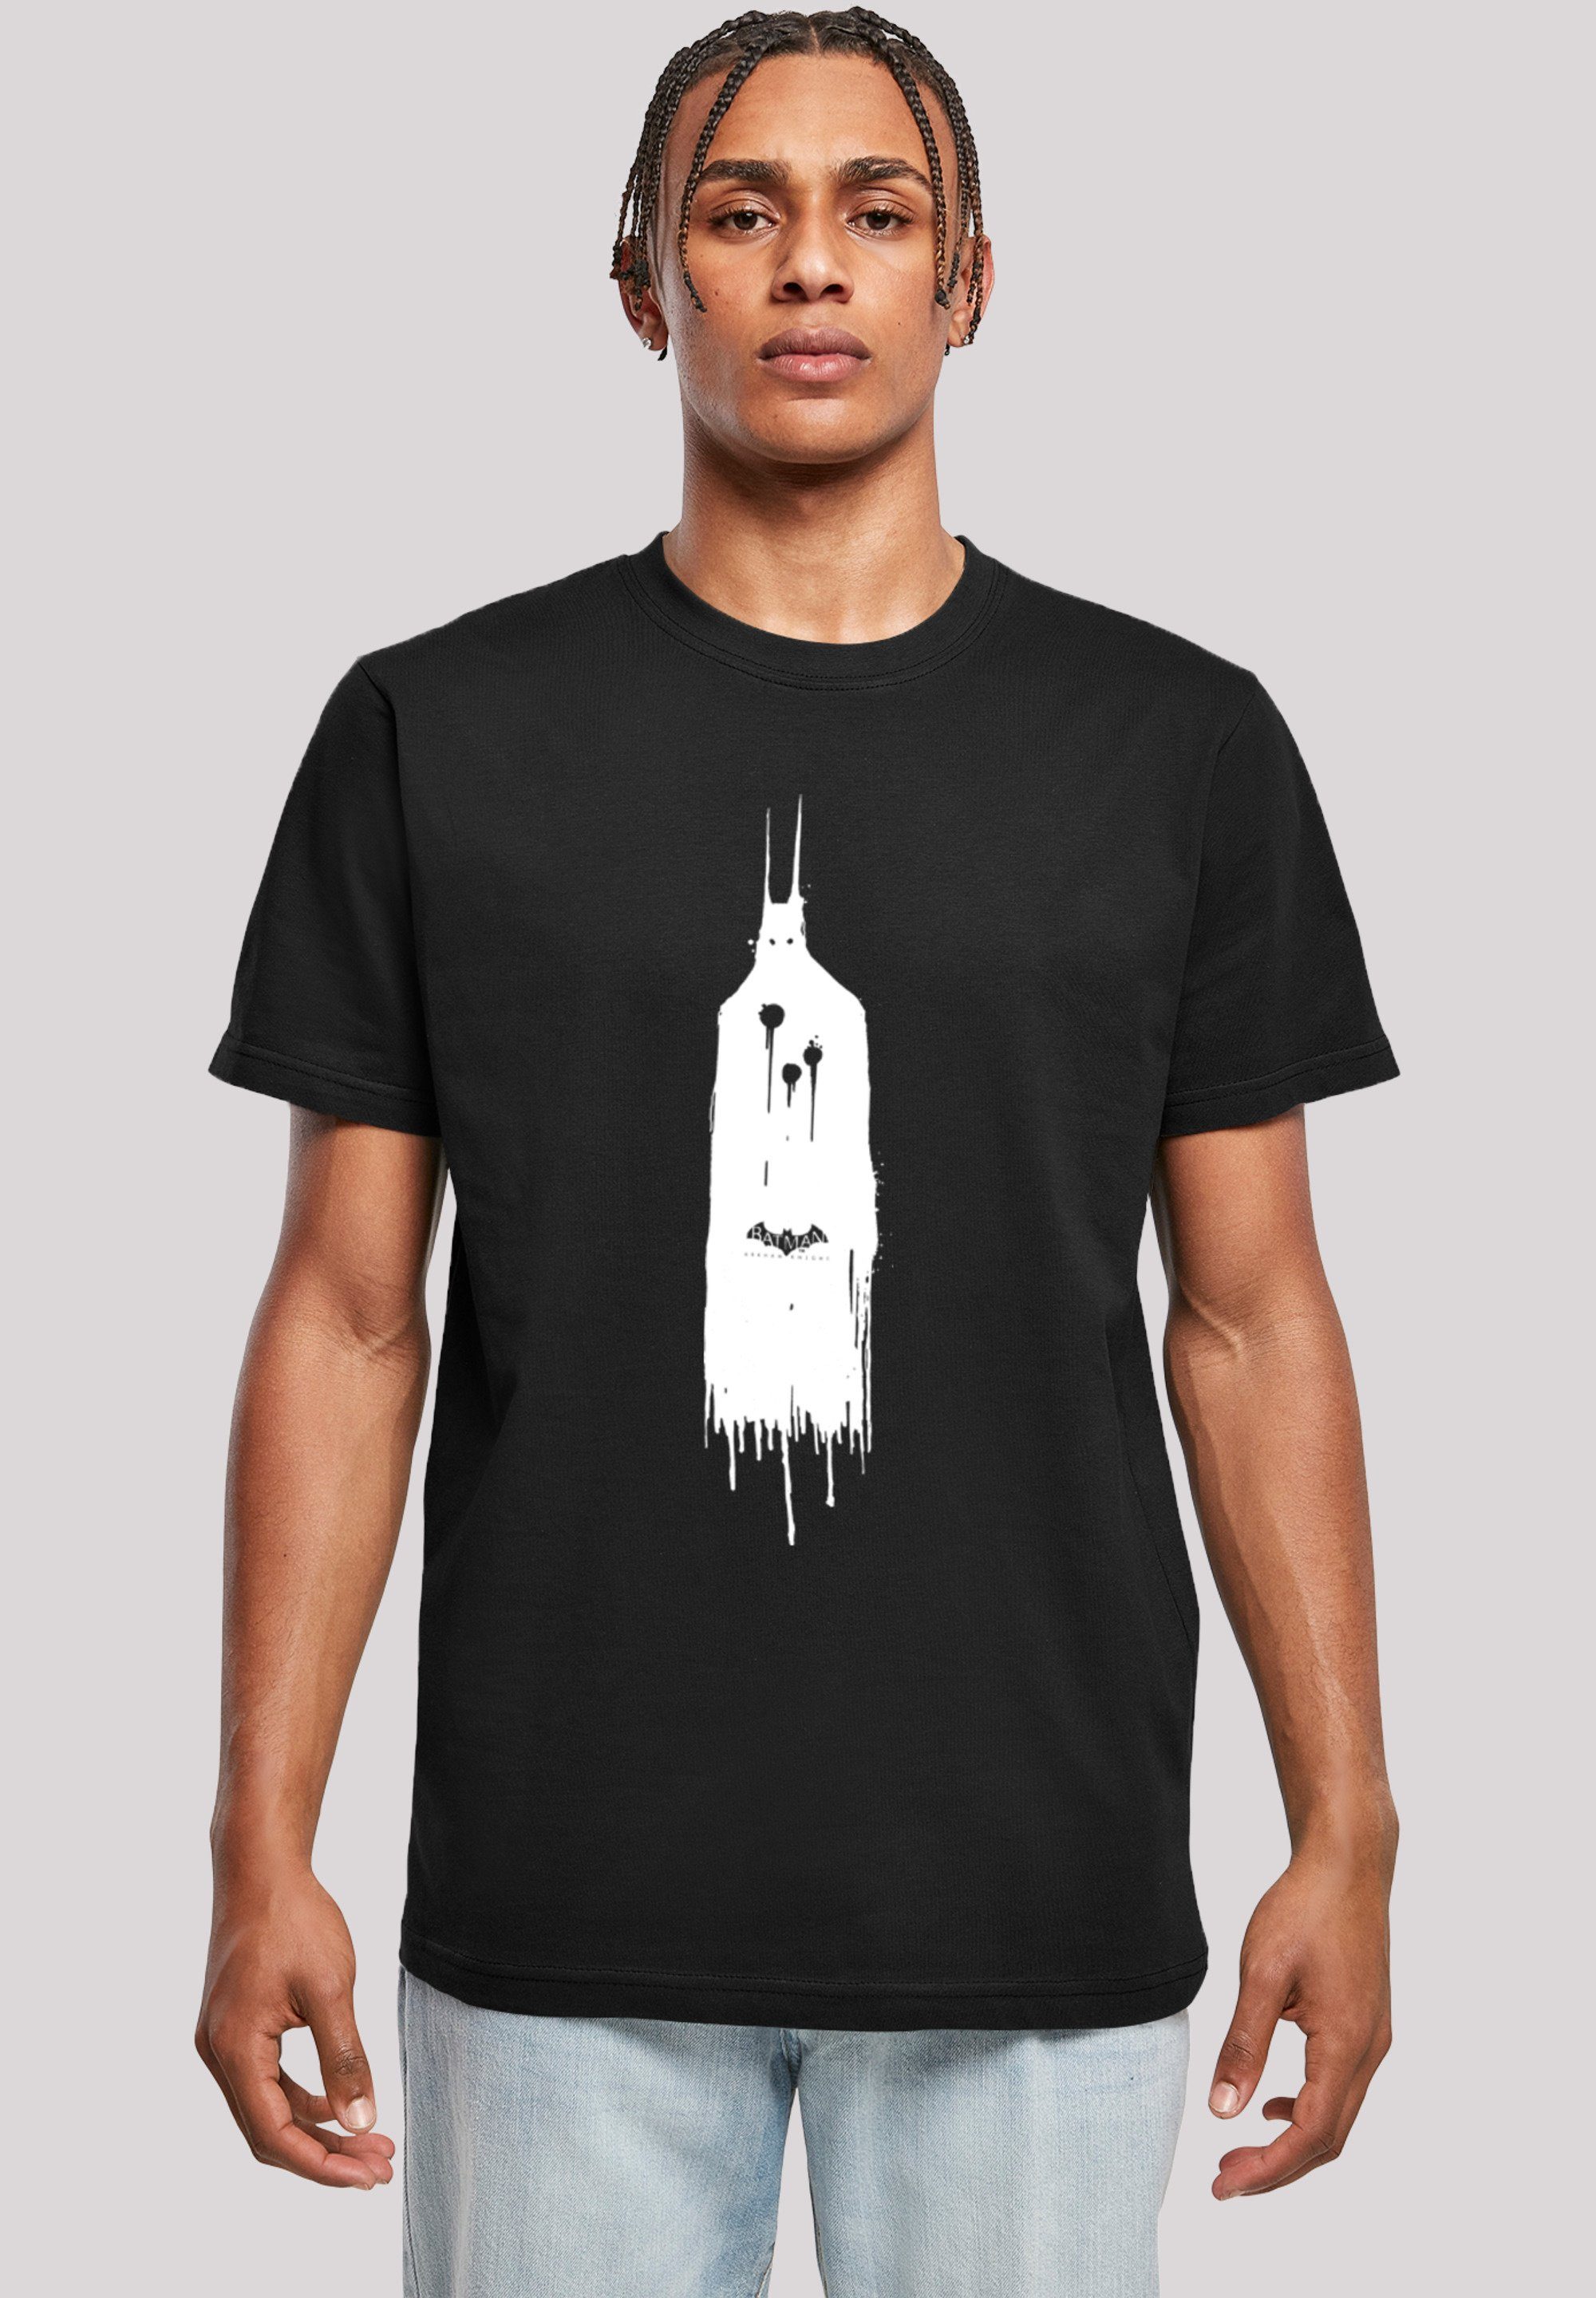 F4NT4STIC T-Shirt Ghost Knight Print Arkham Batman DC Comics